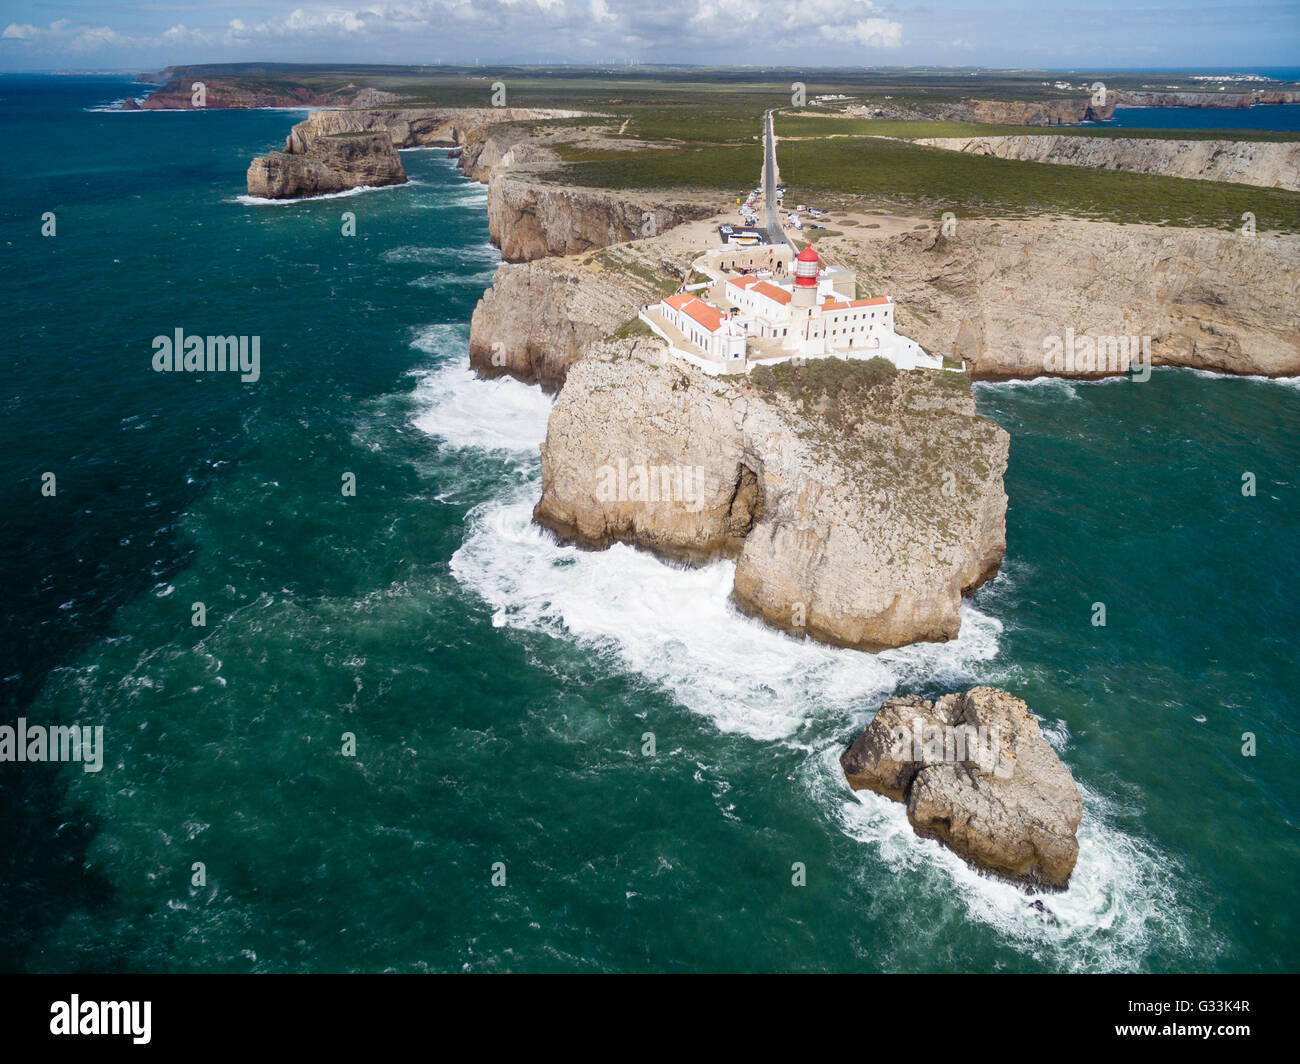 Le phare de Sagres au cap Saint Vincent (Cabo Sao Vicente) - la plupart des Sud-ouest de l'Europe continentale, Algarve, Portugal Banque D'Images